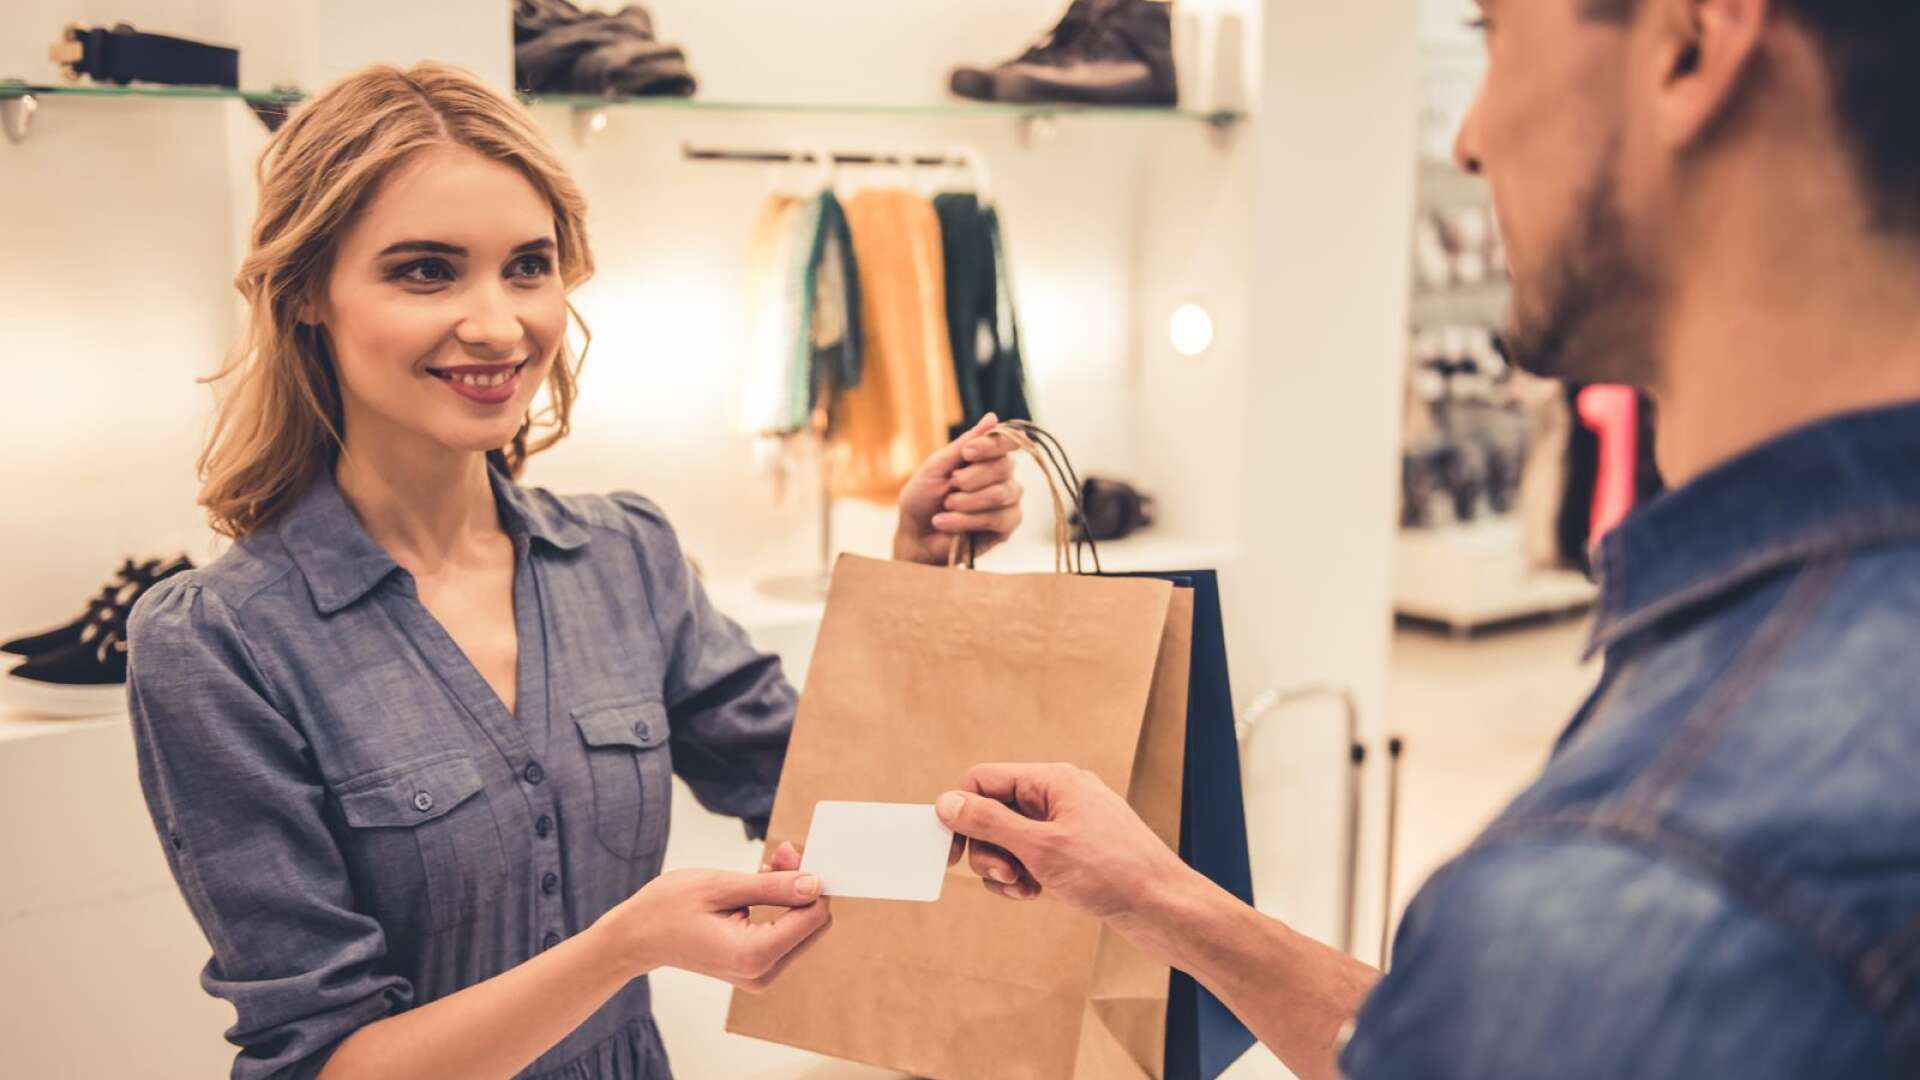 Svenska konsumenter ställer allt högre krav på bra service i fysiska butiker. Det ökar chanserna till merförsäljning och ökad lojalitet till varumärket, enligt en färsk kundundersökning.